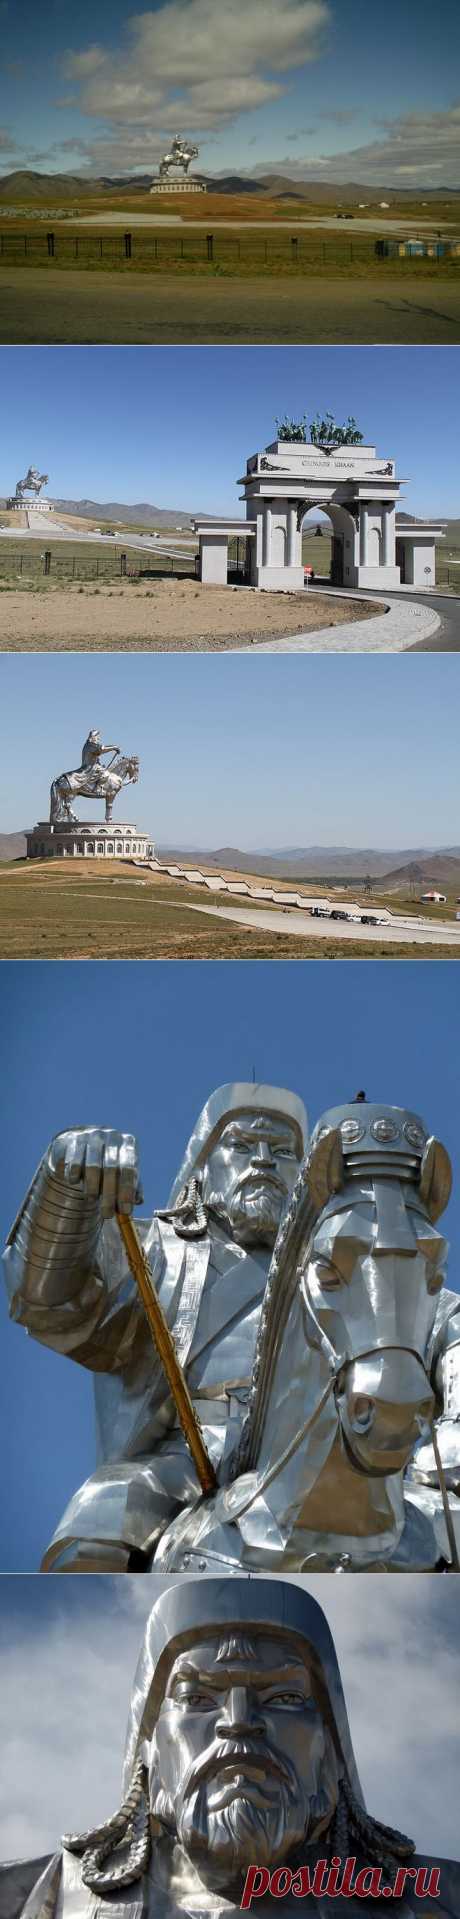 Статуя Чингисхана | OMyWorld - все достопримечательности мира